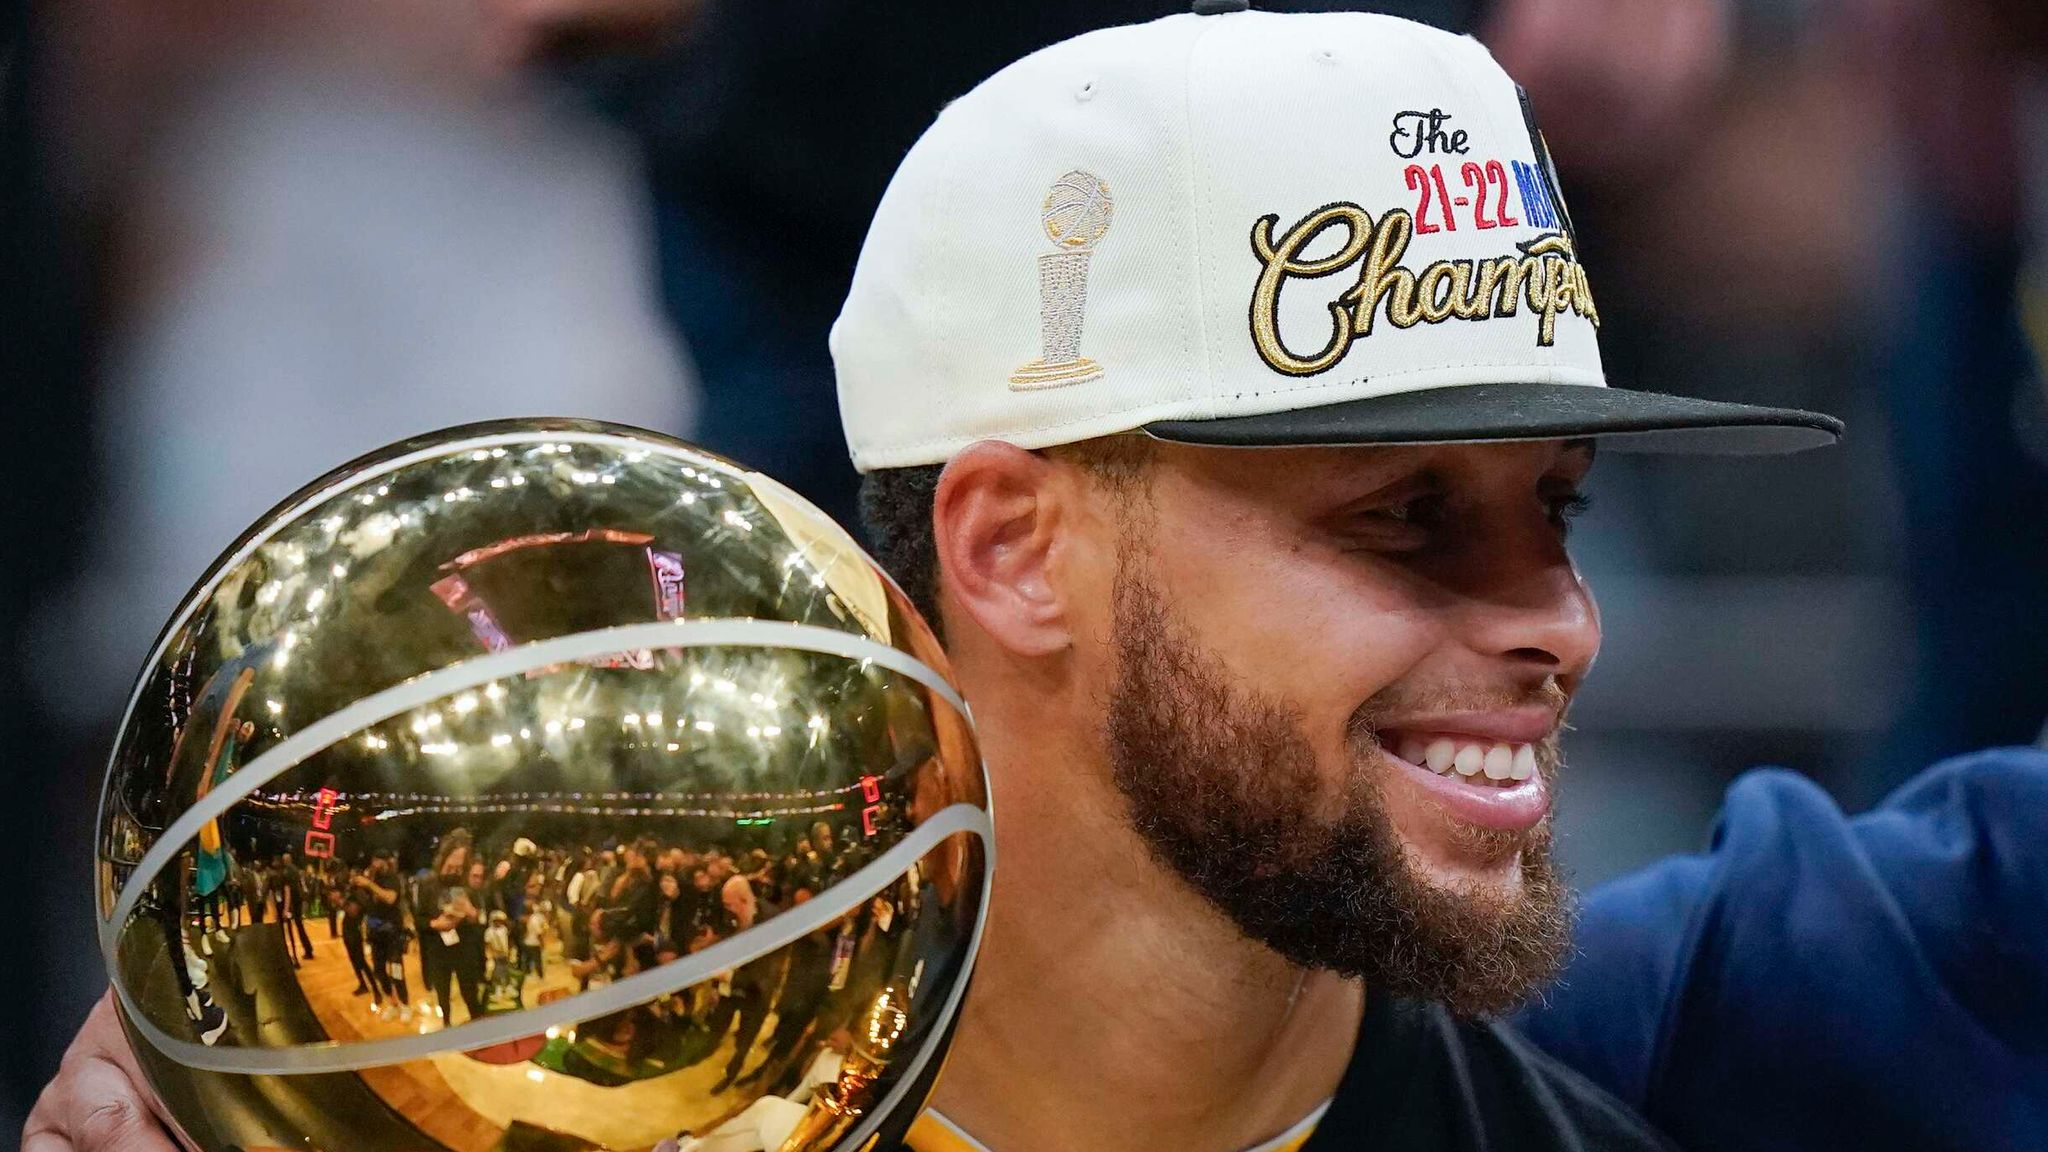 Stephen Curry has never won a Finals MVP. He looks like he wants